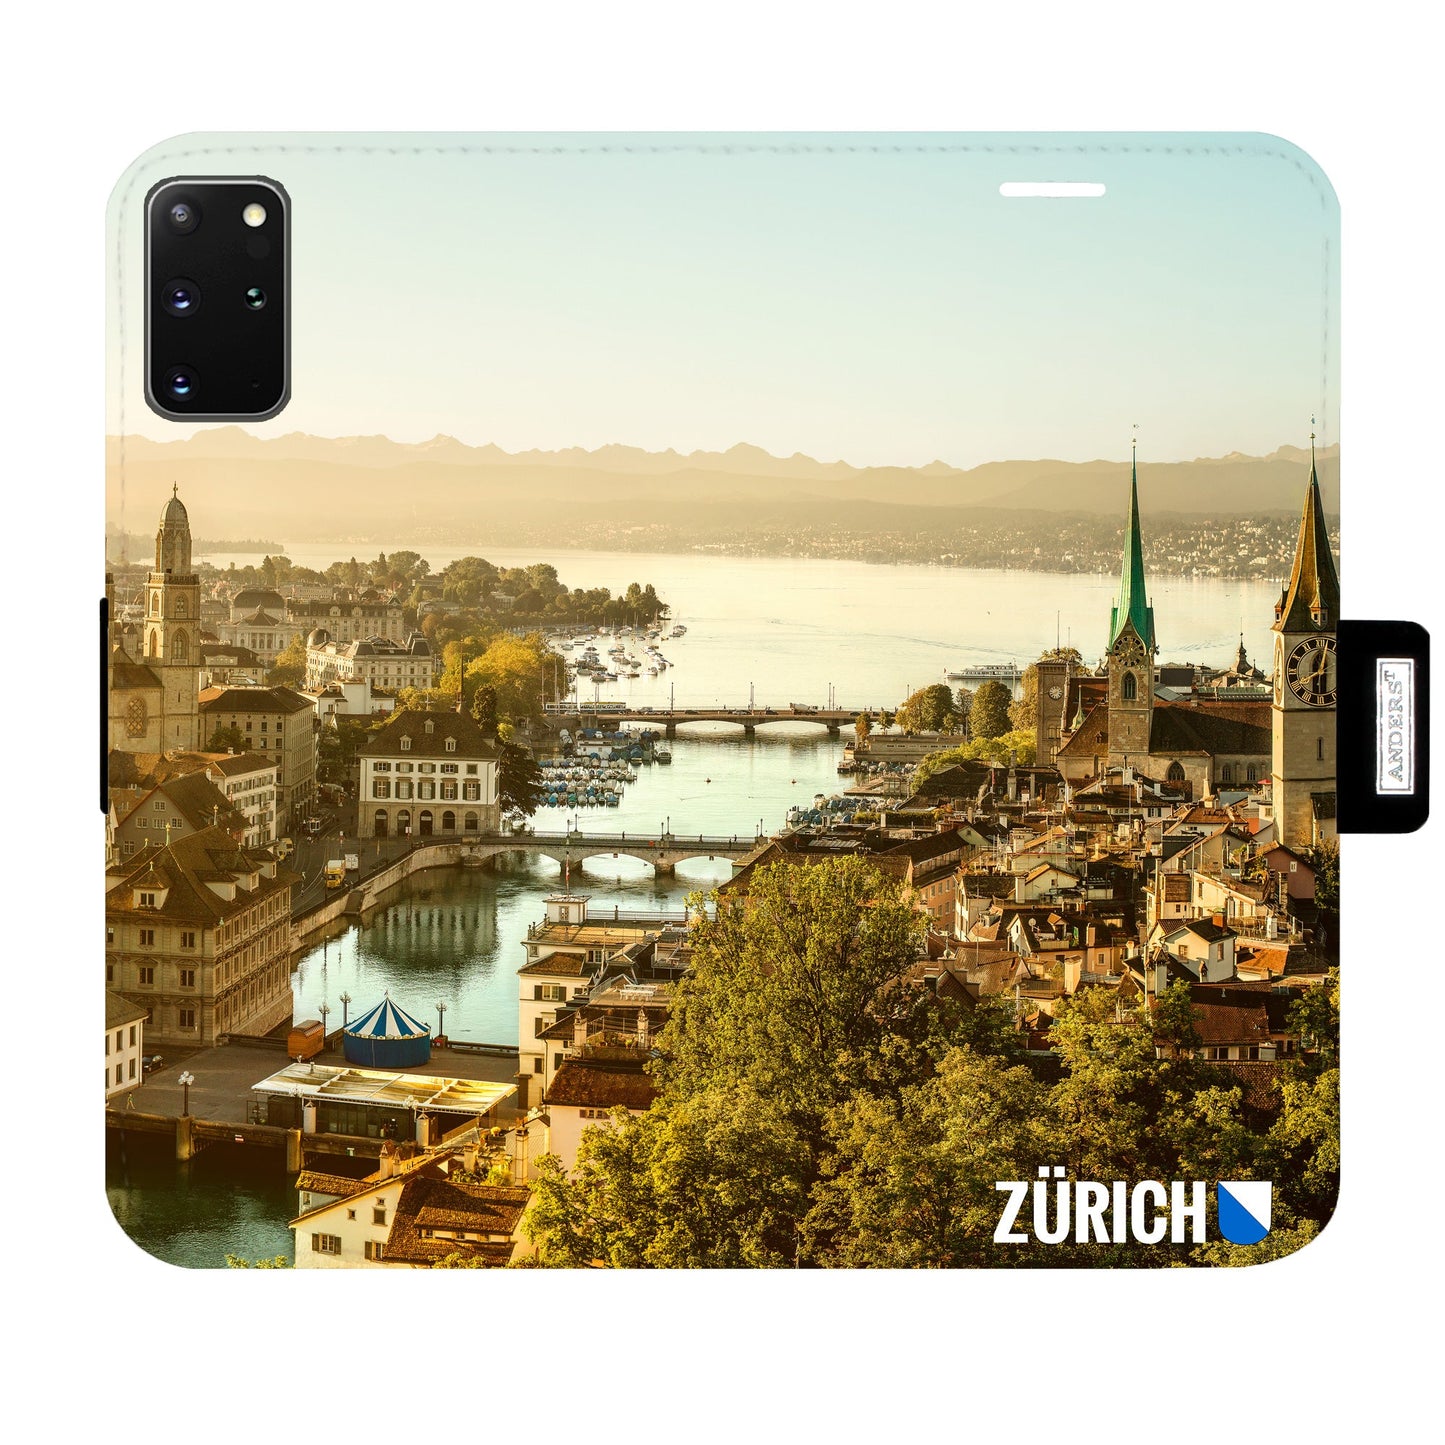 Zürich City von Oben Victor Case für Samsung Galaxy S20 Plus